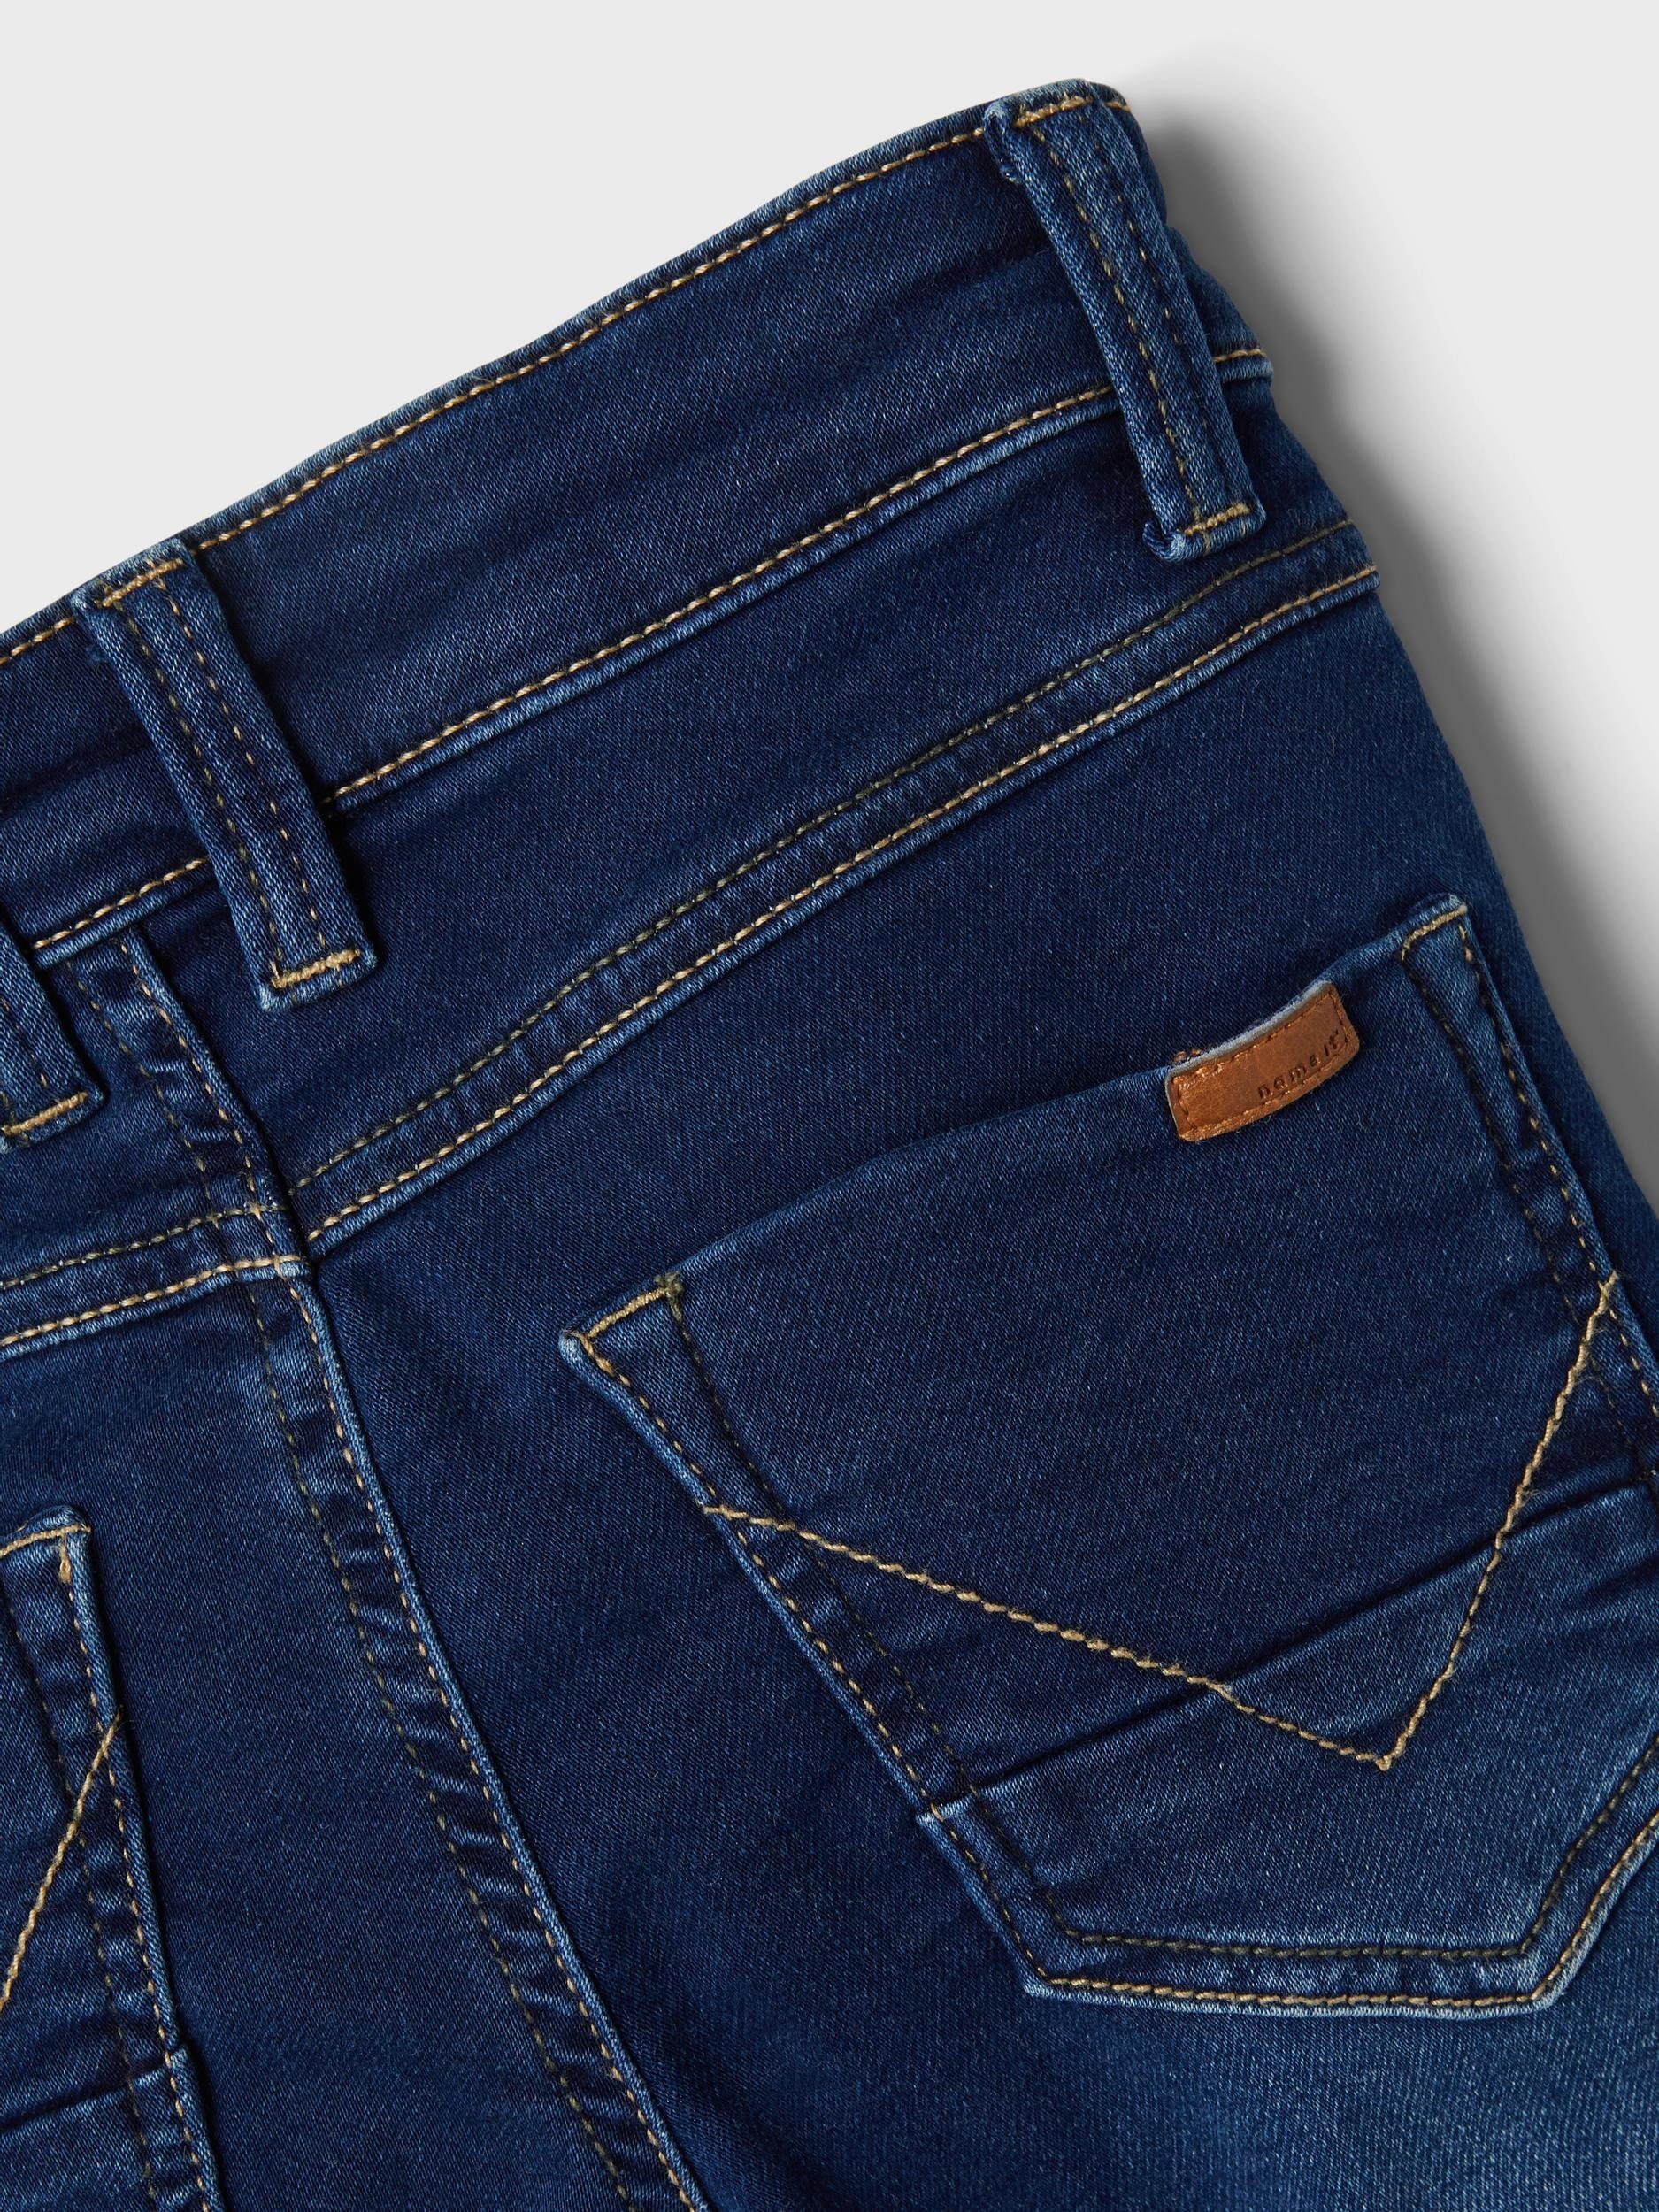 5-Pocket-Jeans Denim X-Slim It in Jungen Name Fit Hose